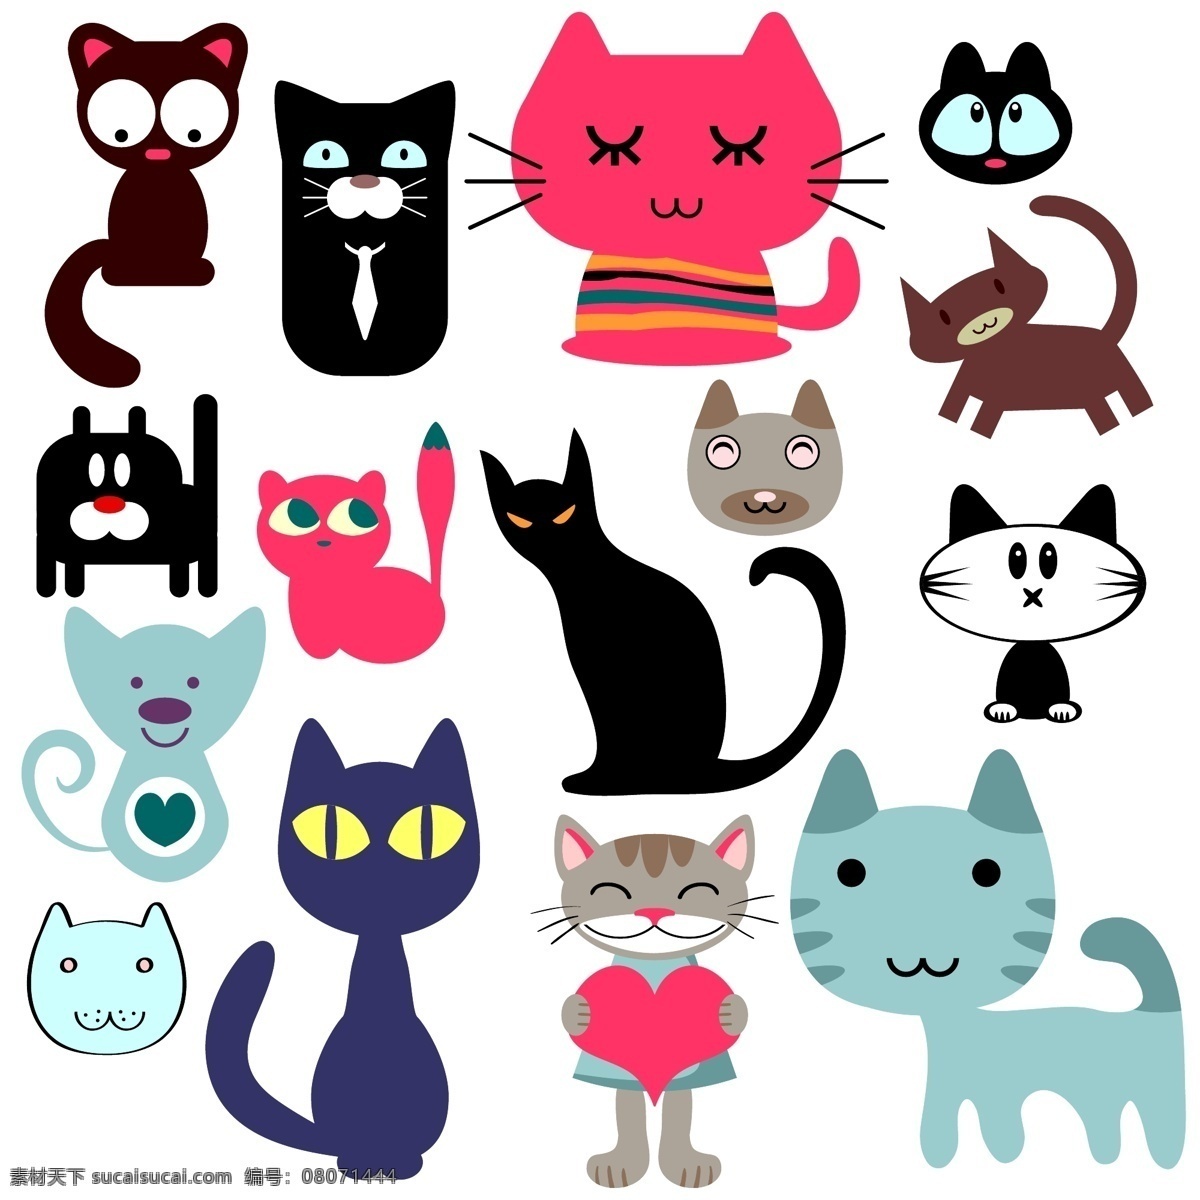 卡通 猫咪 矢量 模版 矢量模板 小猫 logo 创意 标志设计 商标设计 卡通猫咪插画 卡通壁纸 可爱卡通图片 卡通画图片